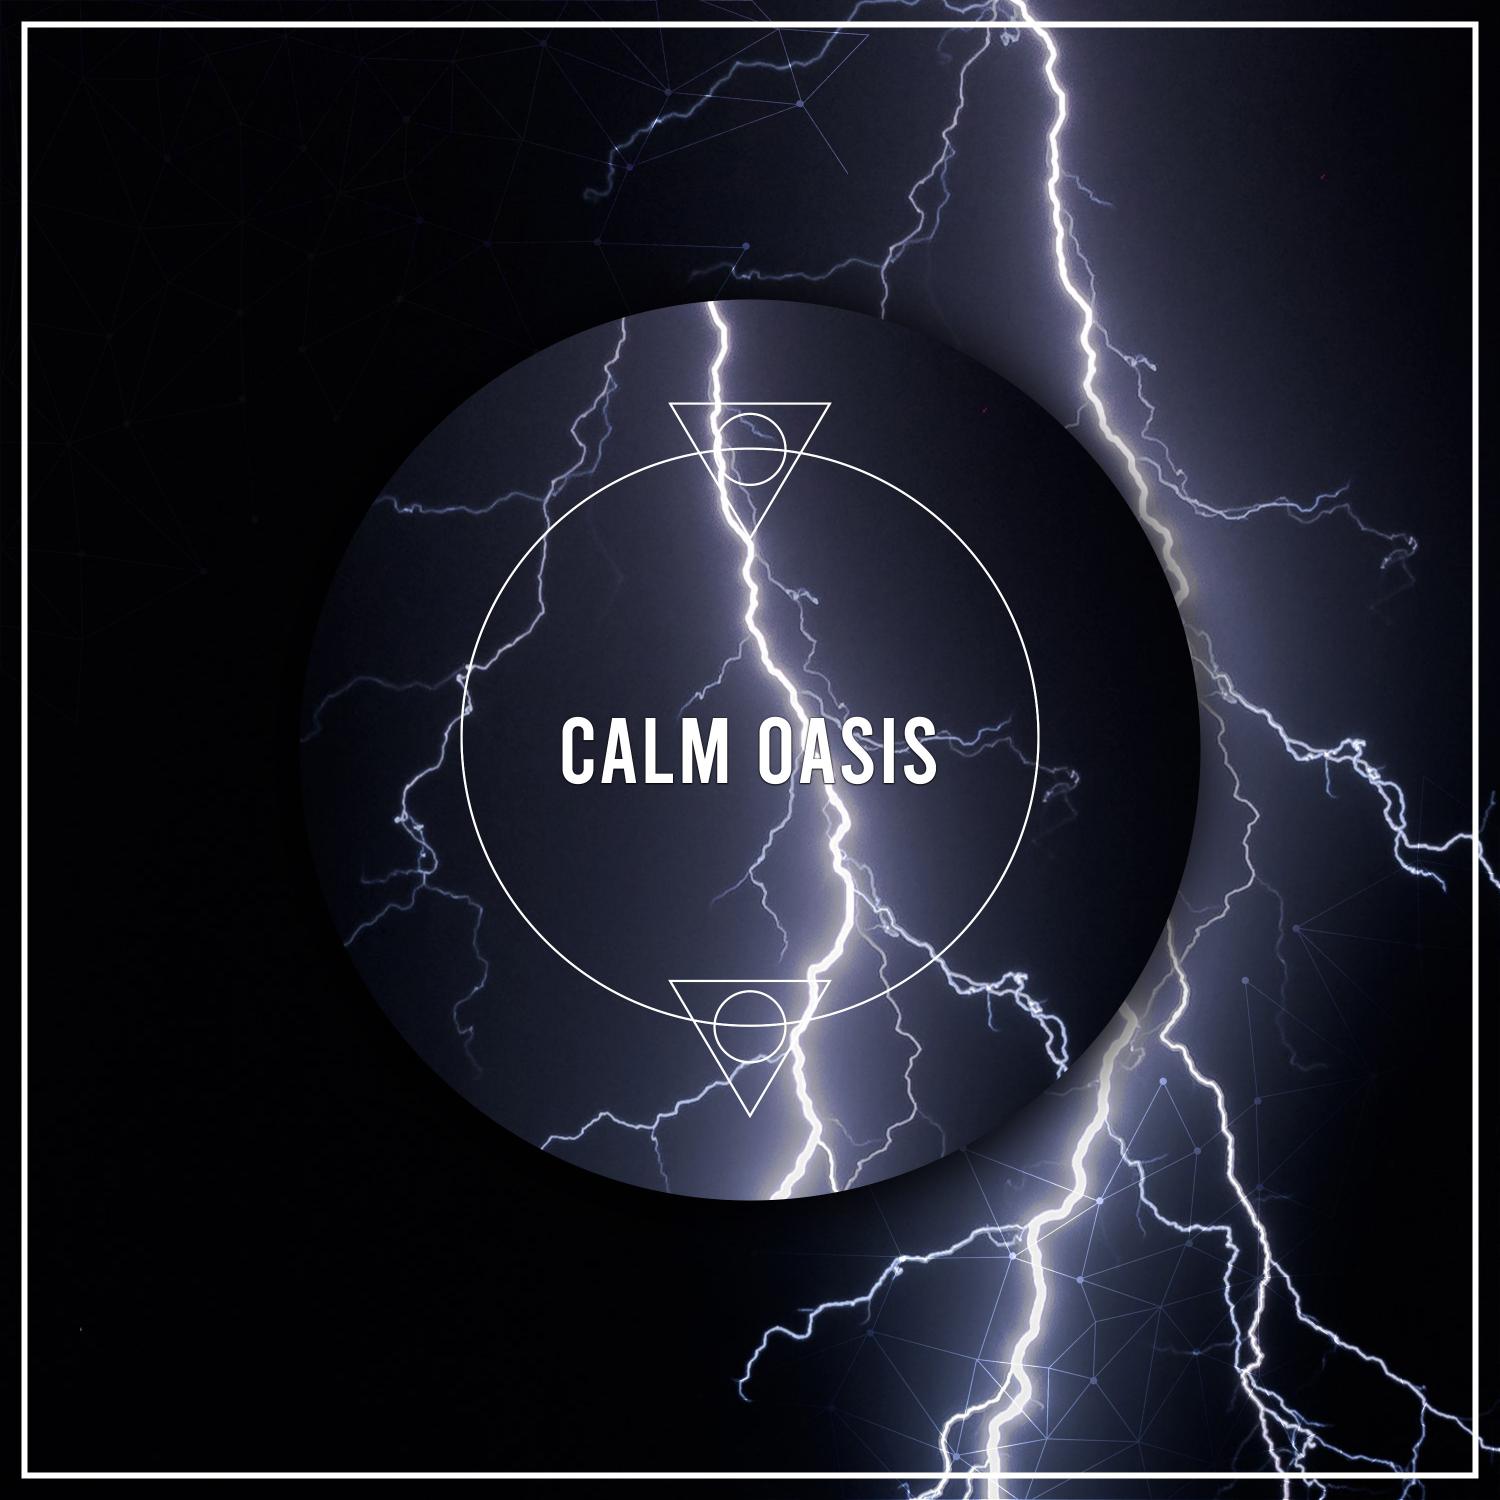 13 Calm Oasis Tracks to Provide Focus